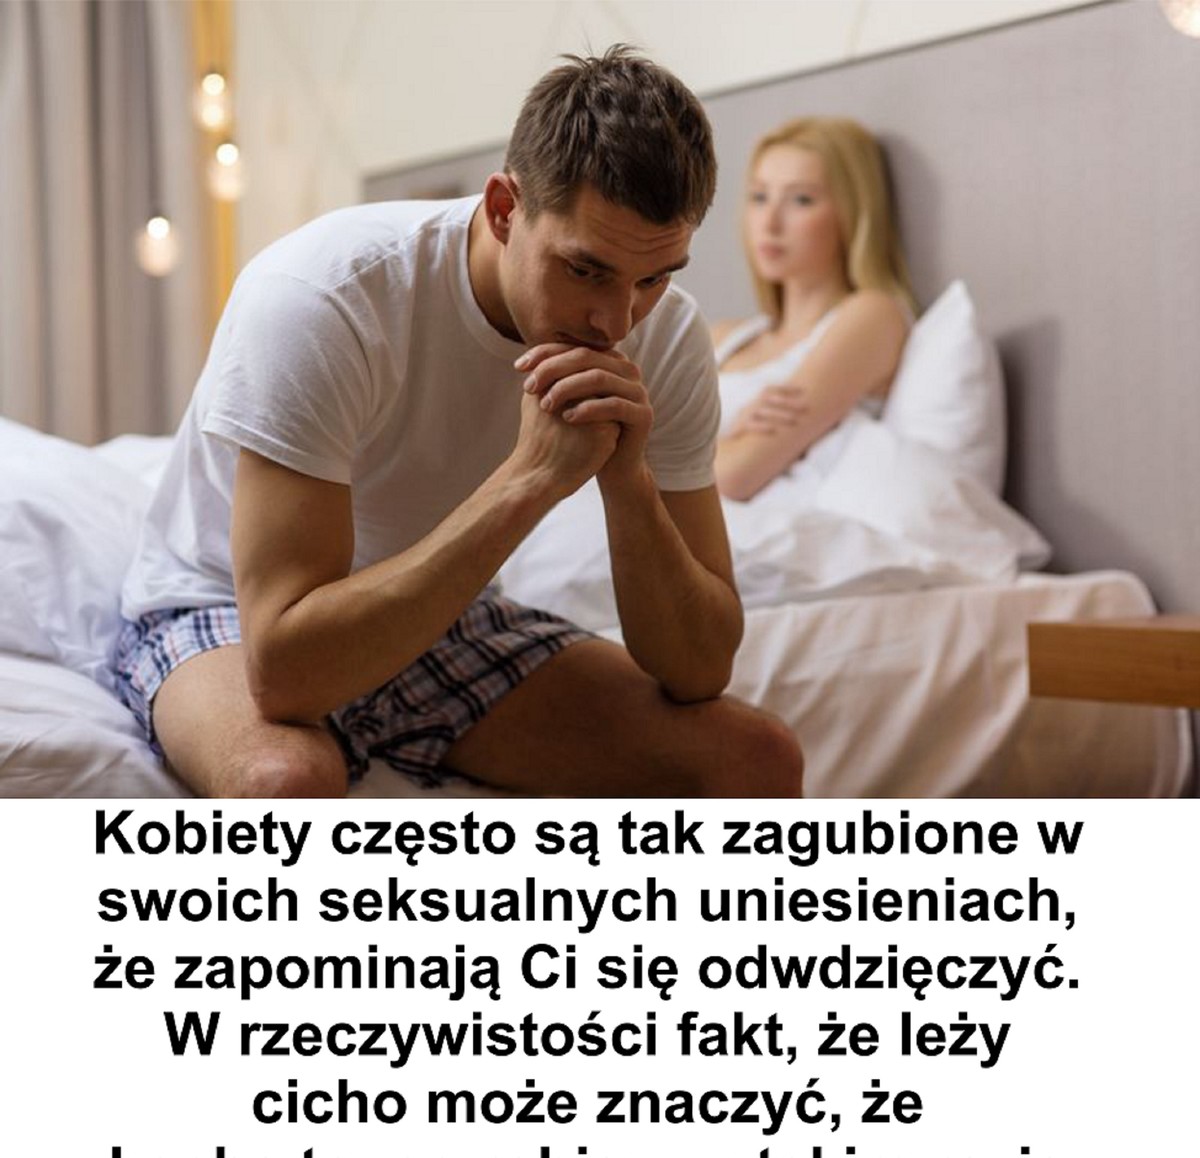 Penis mojego chłopaka brzydko pachnie? Przesadzam? - fitz-roy.pl